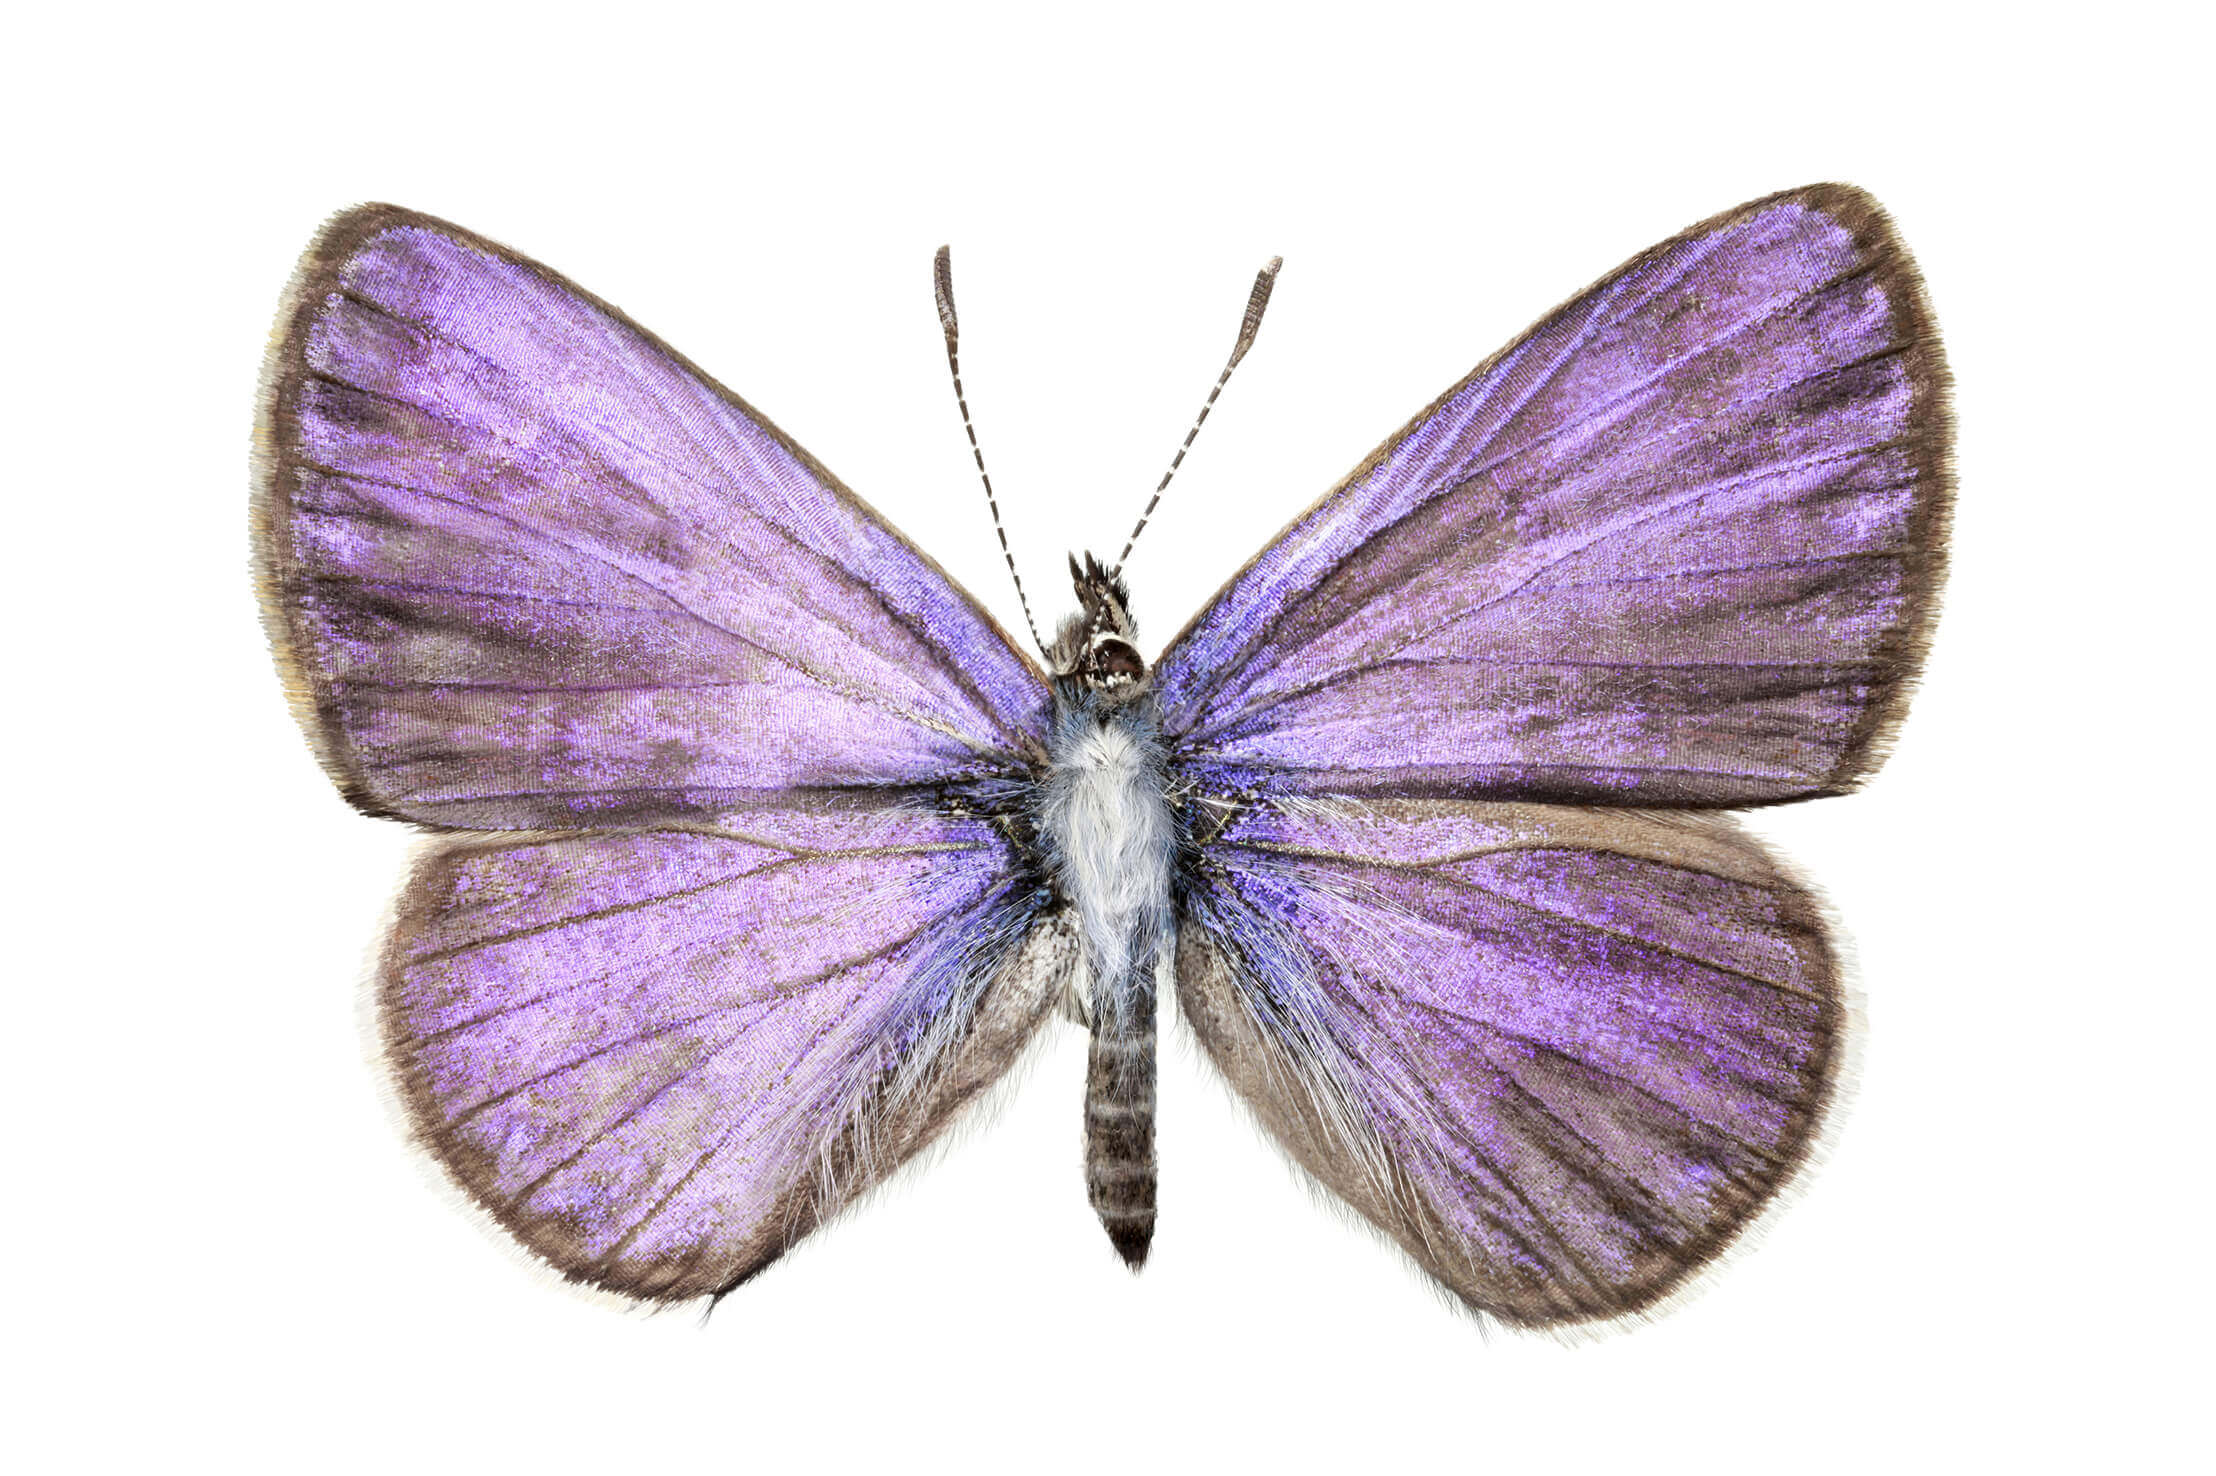 Licena del tamarugo (Leptotes trigemmatus). Esta especie presenta un marcado dimorfismo sexual: mientras los machos son de un llamativo color azul-celeste iridiscente (como el ejemplar de la imagen), las hembras son de color café.